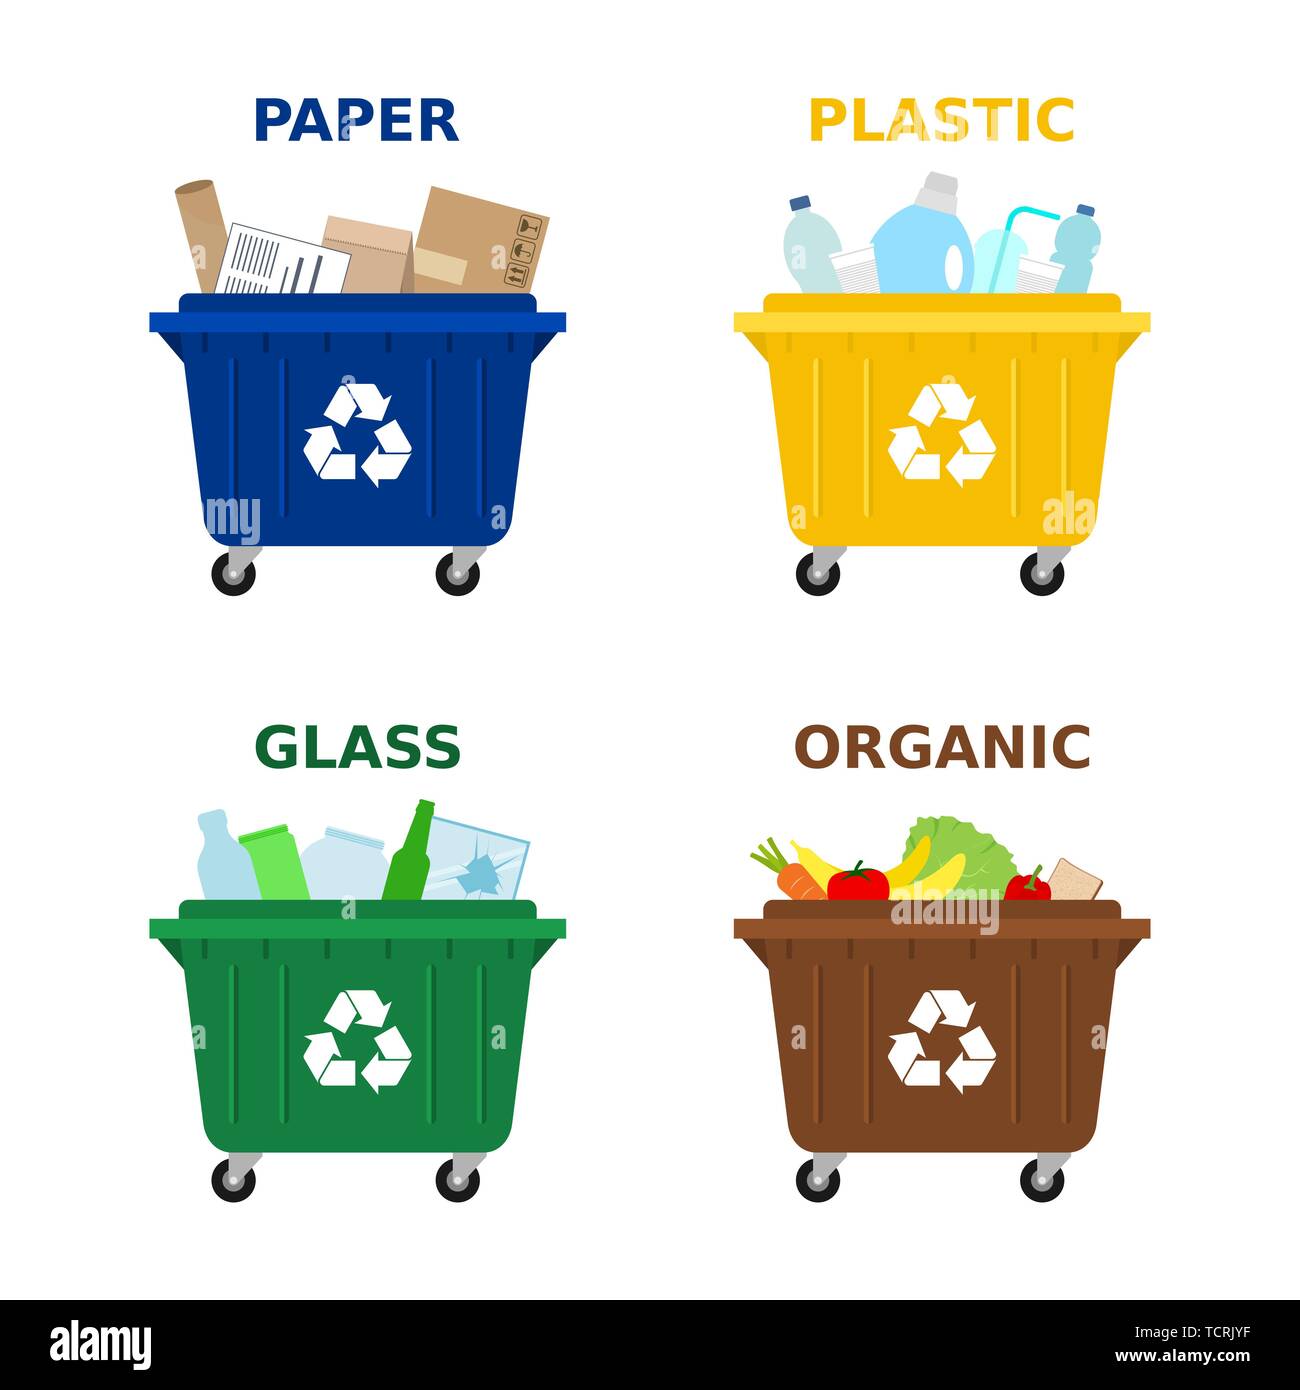 Los dumpsters de diferentes colores para la clasificación de los residuos.  Separar la basura, la clasificación de residuos, la gestión de residuos.  Recipientes de basura para el papel, plástico, vidrio y alimentos